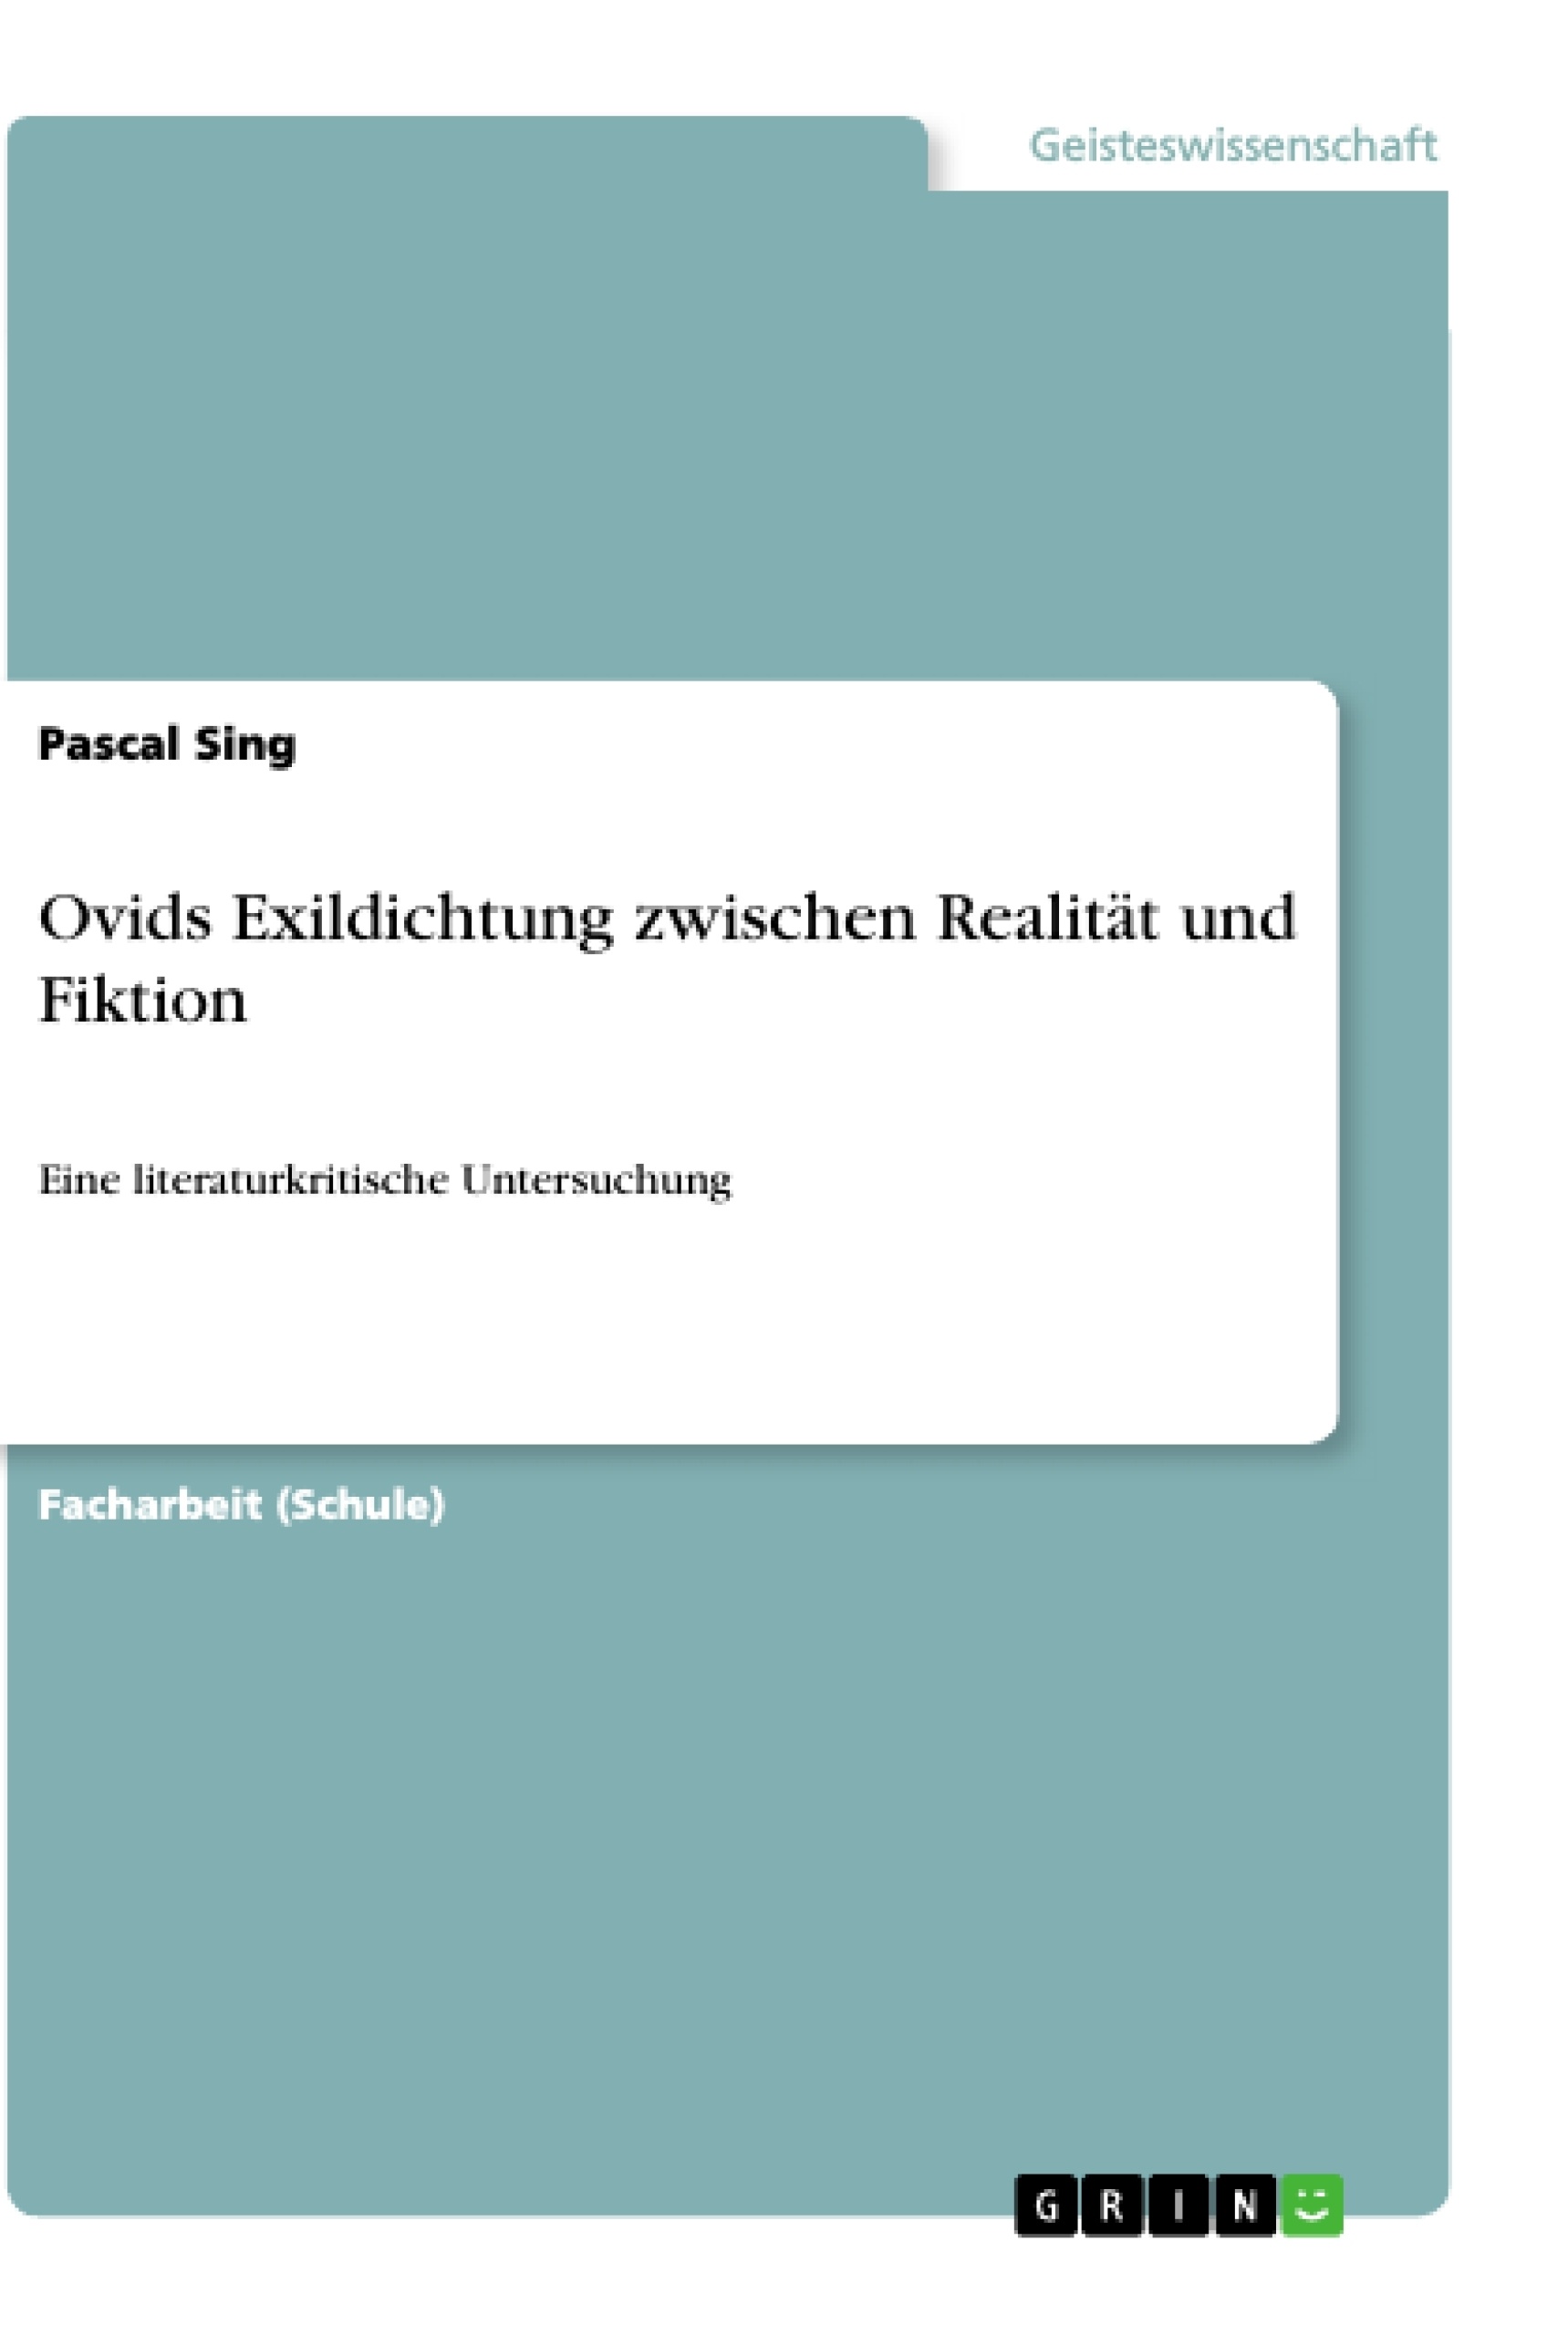 Title: Ovids Exildichtung zwischen Realität und Fiktion